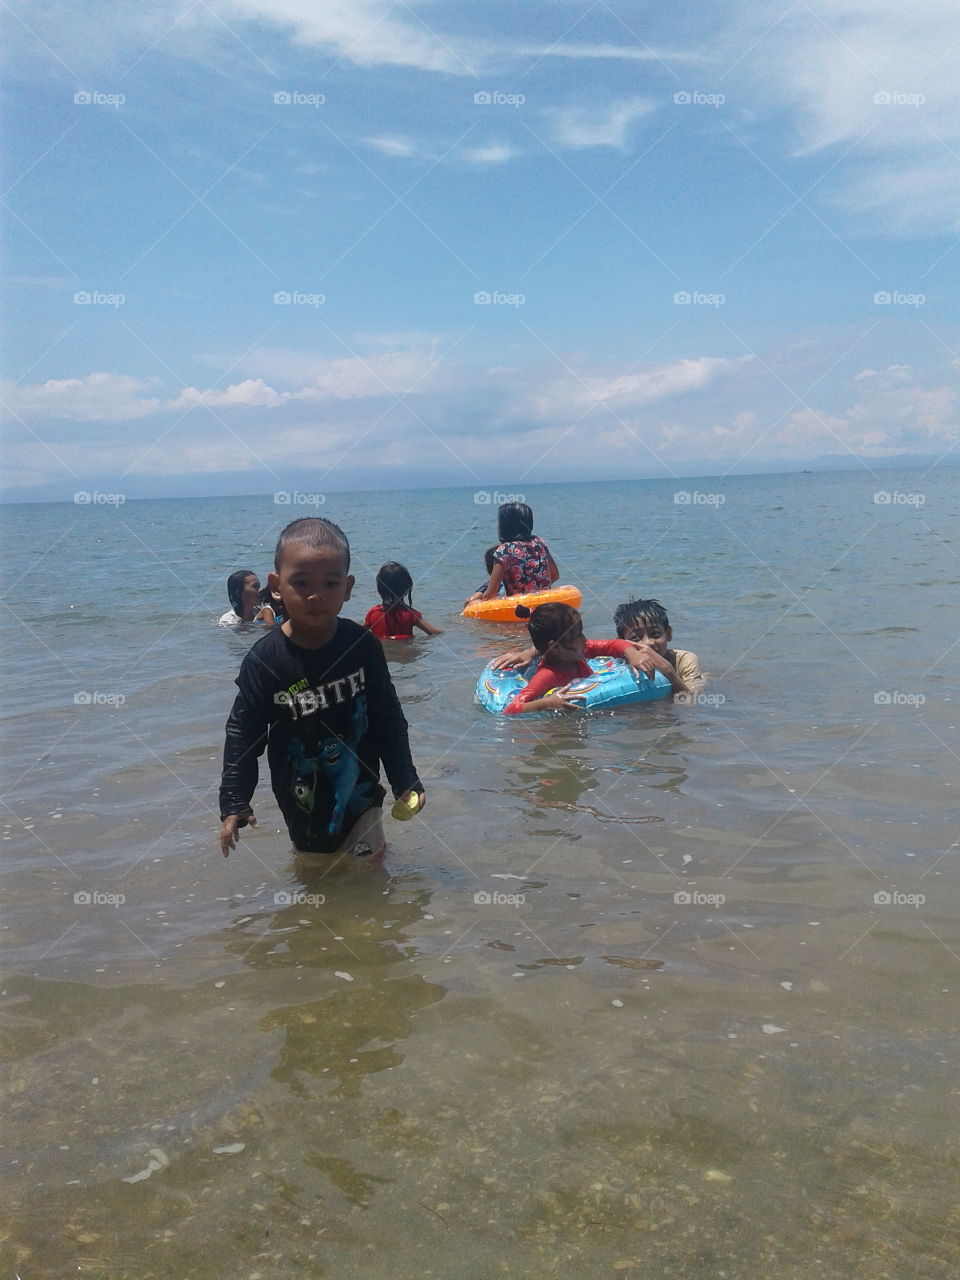 Little kids in the sea
enjoy swimming